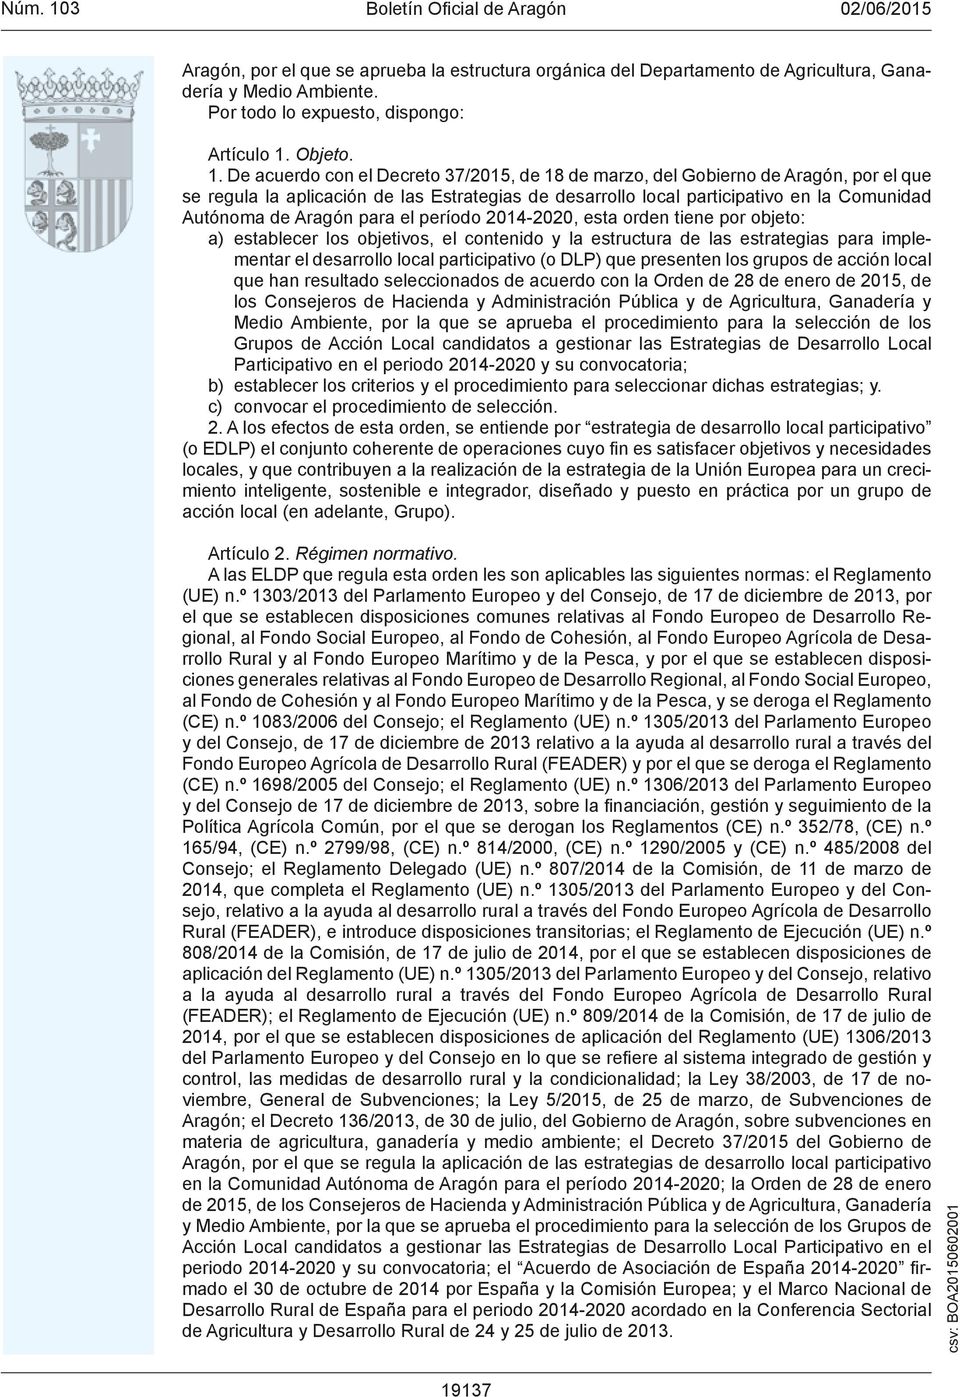 De acuerdo con el Decreto 37/2015, de 18 de marzo, del Gobierno de Aragón, por el que se regula la aplicación de las Estrategias de desarrollo local participativo en la Comunidad Autónoma de Aragón